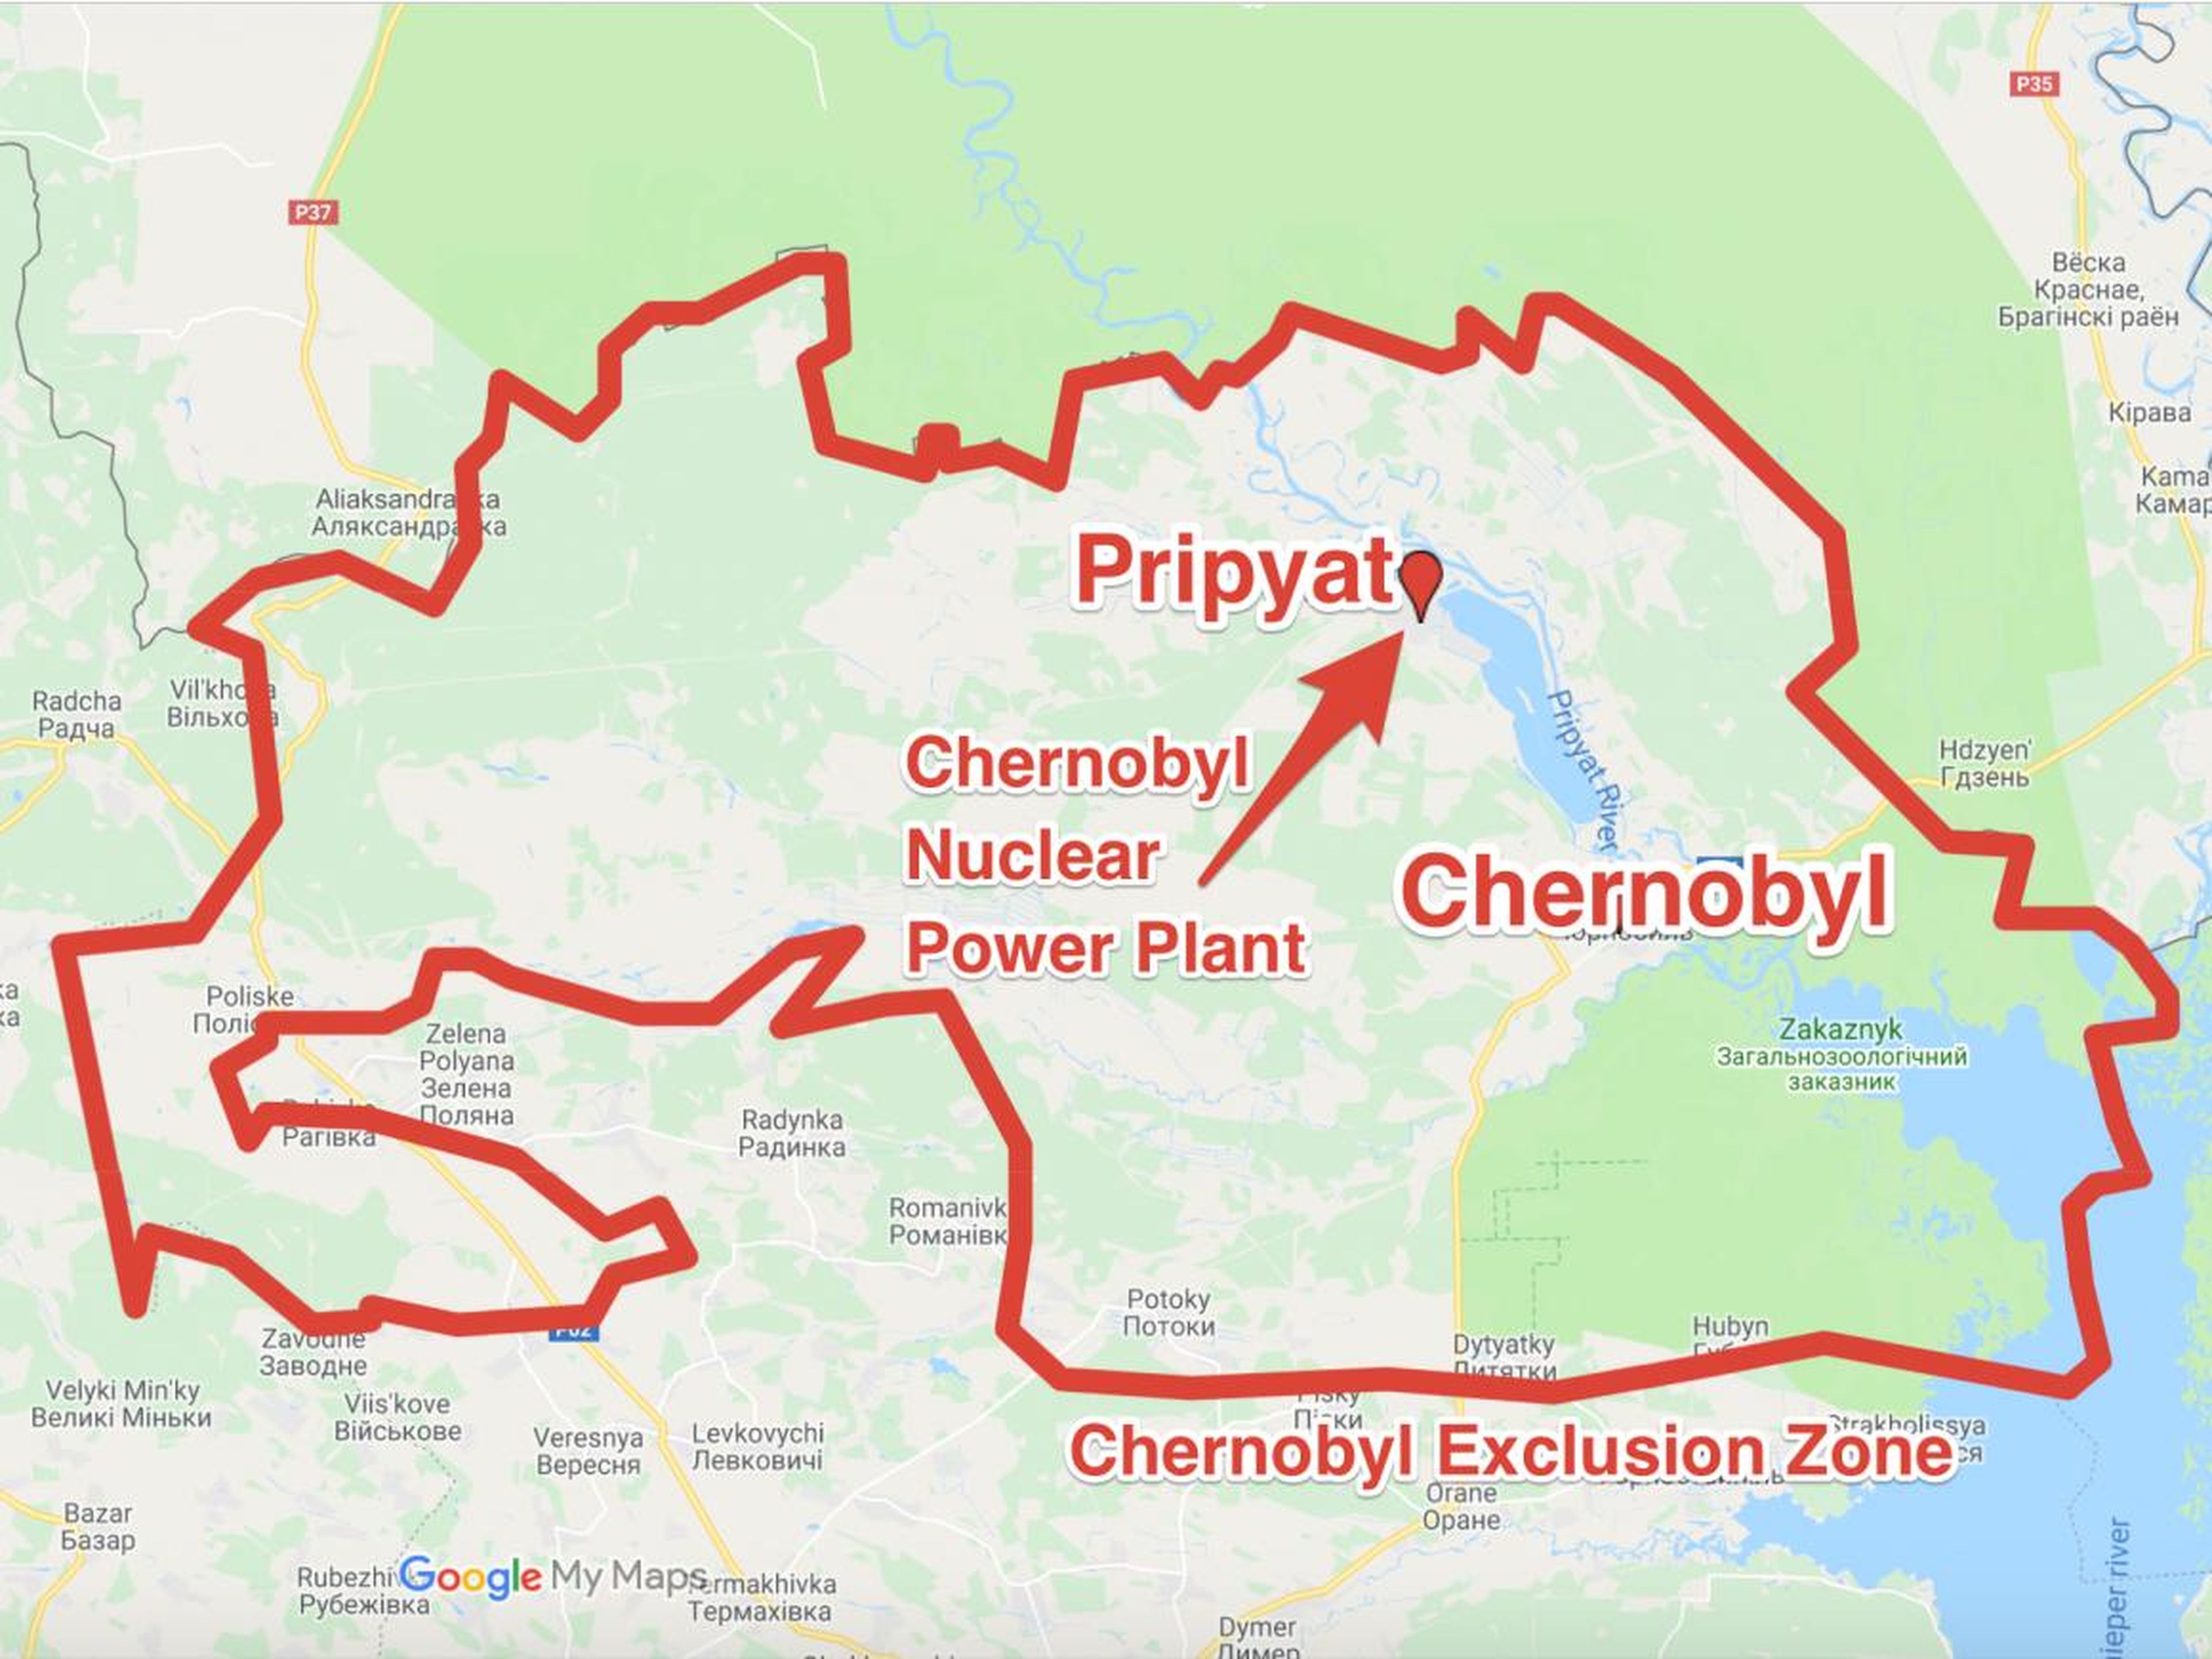 La planta nuclear de Chernobyl está muy cerca de la ciudad abandona de Pripyat